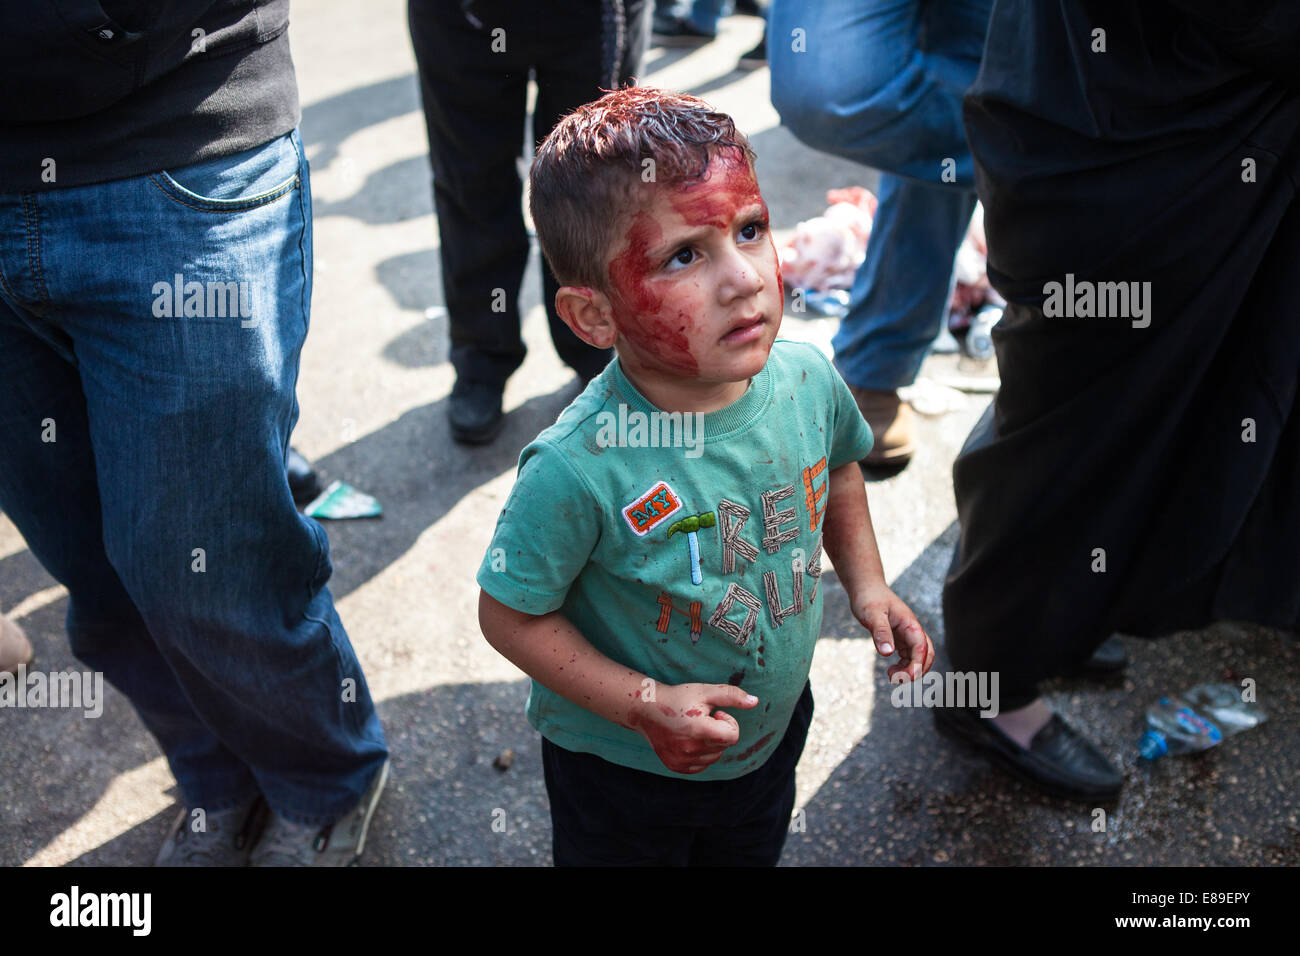 Un jeune garçon musulman chiite, son visage maculé de sang, à la recherche jusqu'à son père, au cours de la journée d'Ashoura, Nabatieh, Liban. Banque D'Images